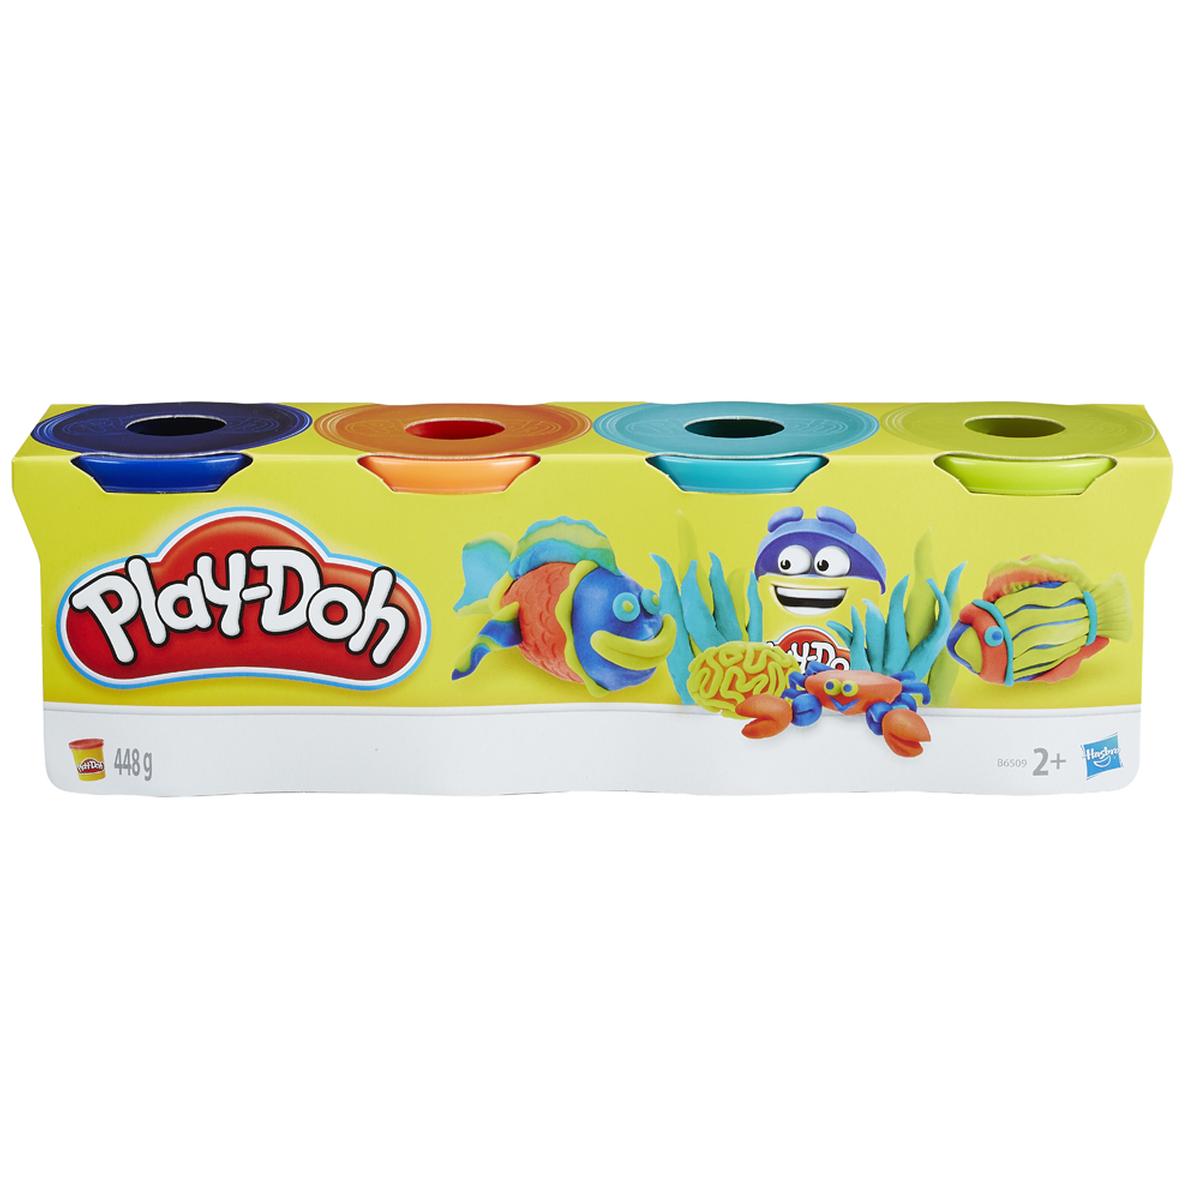 Play-Doh - Pack 4 Botes (varios modelos) | Playdoh | Toys"R"Us España